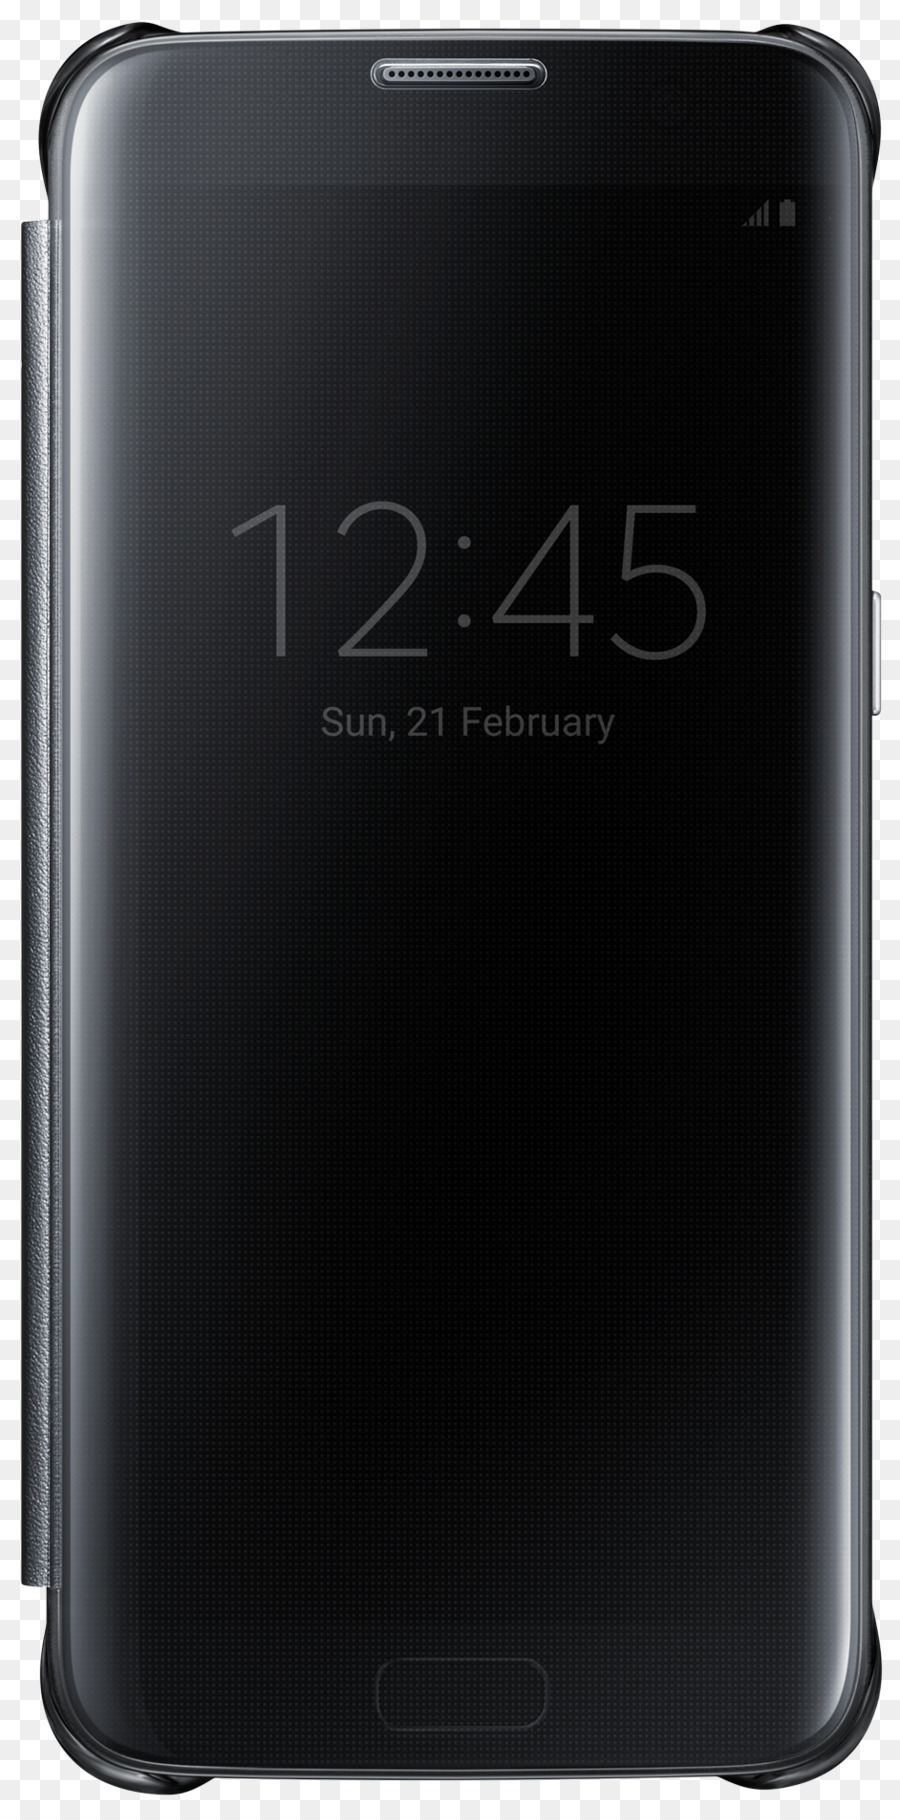 Xiaomi Mi A1 Samsung Galaxy S6 Samsung Galaxy S7 ASUS ZenFone 2 Laser (ZE550KL) - Samsung